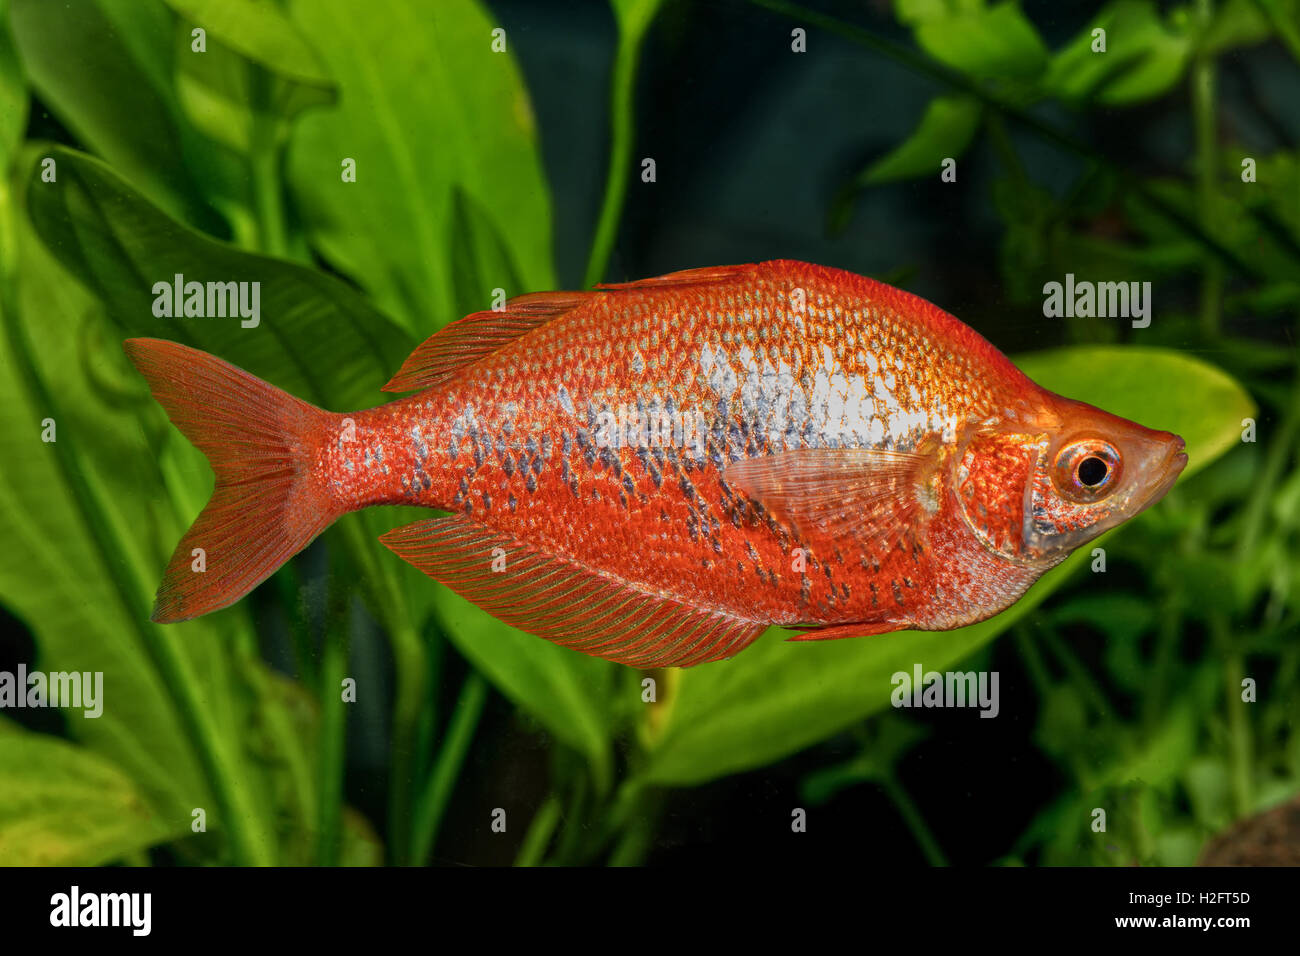 Portrait of freshwater rainbow fish (Glossolepis incisus) in aquarium Stock Photo